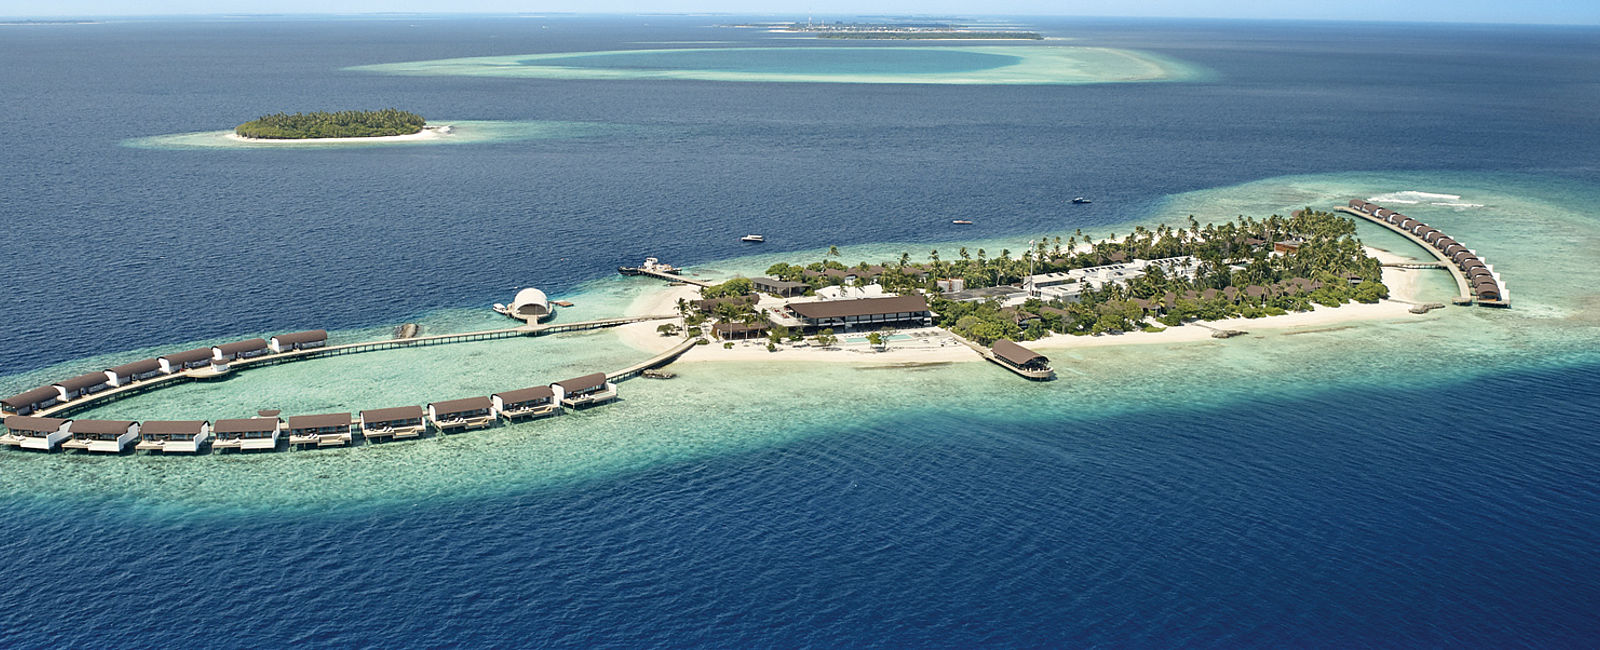 HOTEL TIPPS
 The Westin Maldives Miriandhoo Resort, Malediven 
 Himmel auf Erden 